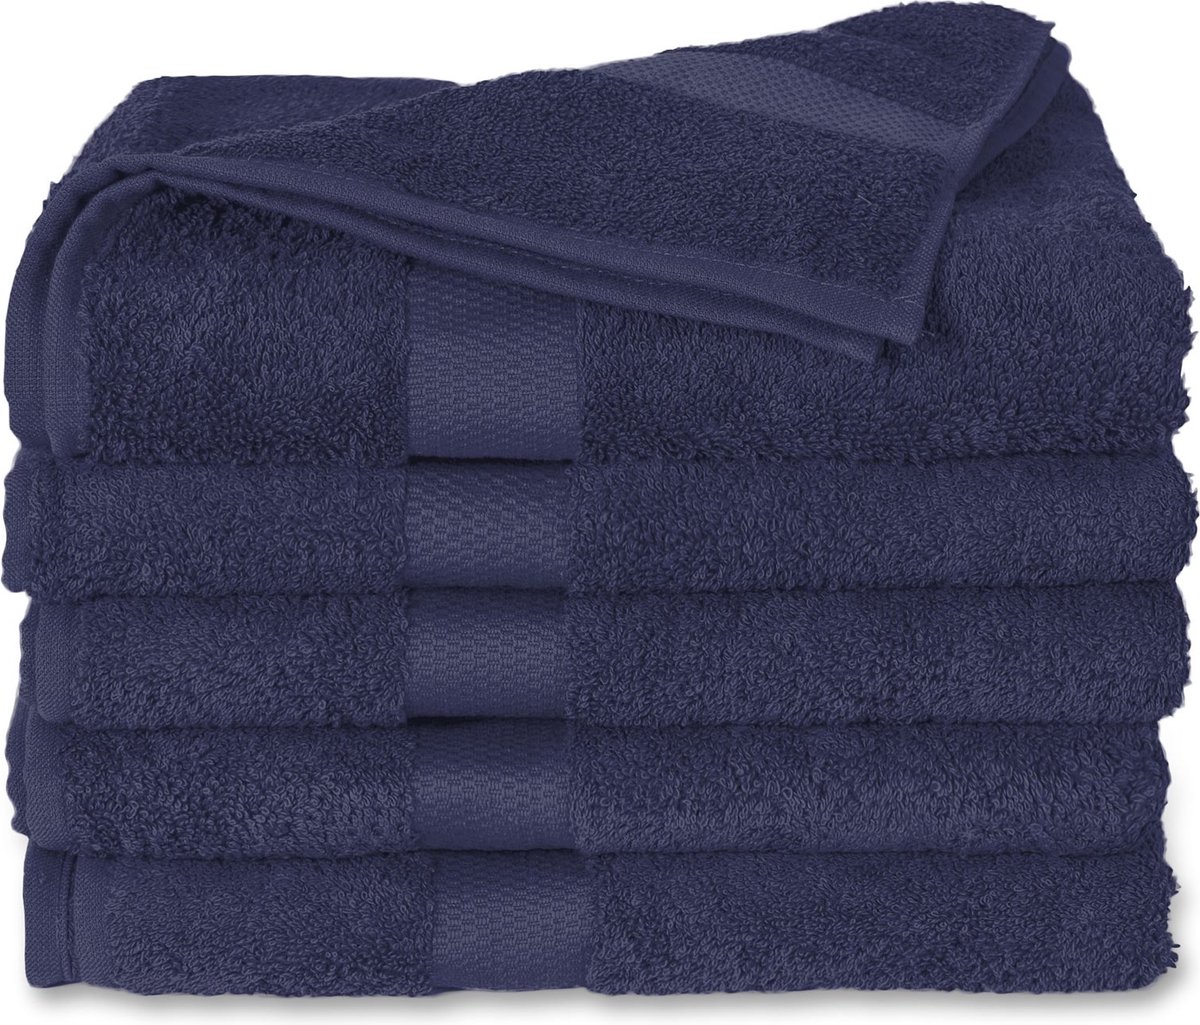 Twentse Damast Luxe Katoenen Badstof Handdoeken - Douchelaken - 2 stuks - 70x140 cm - Marine Blauw